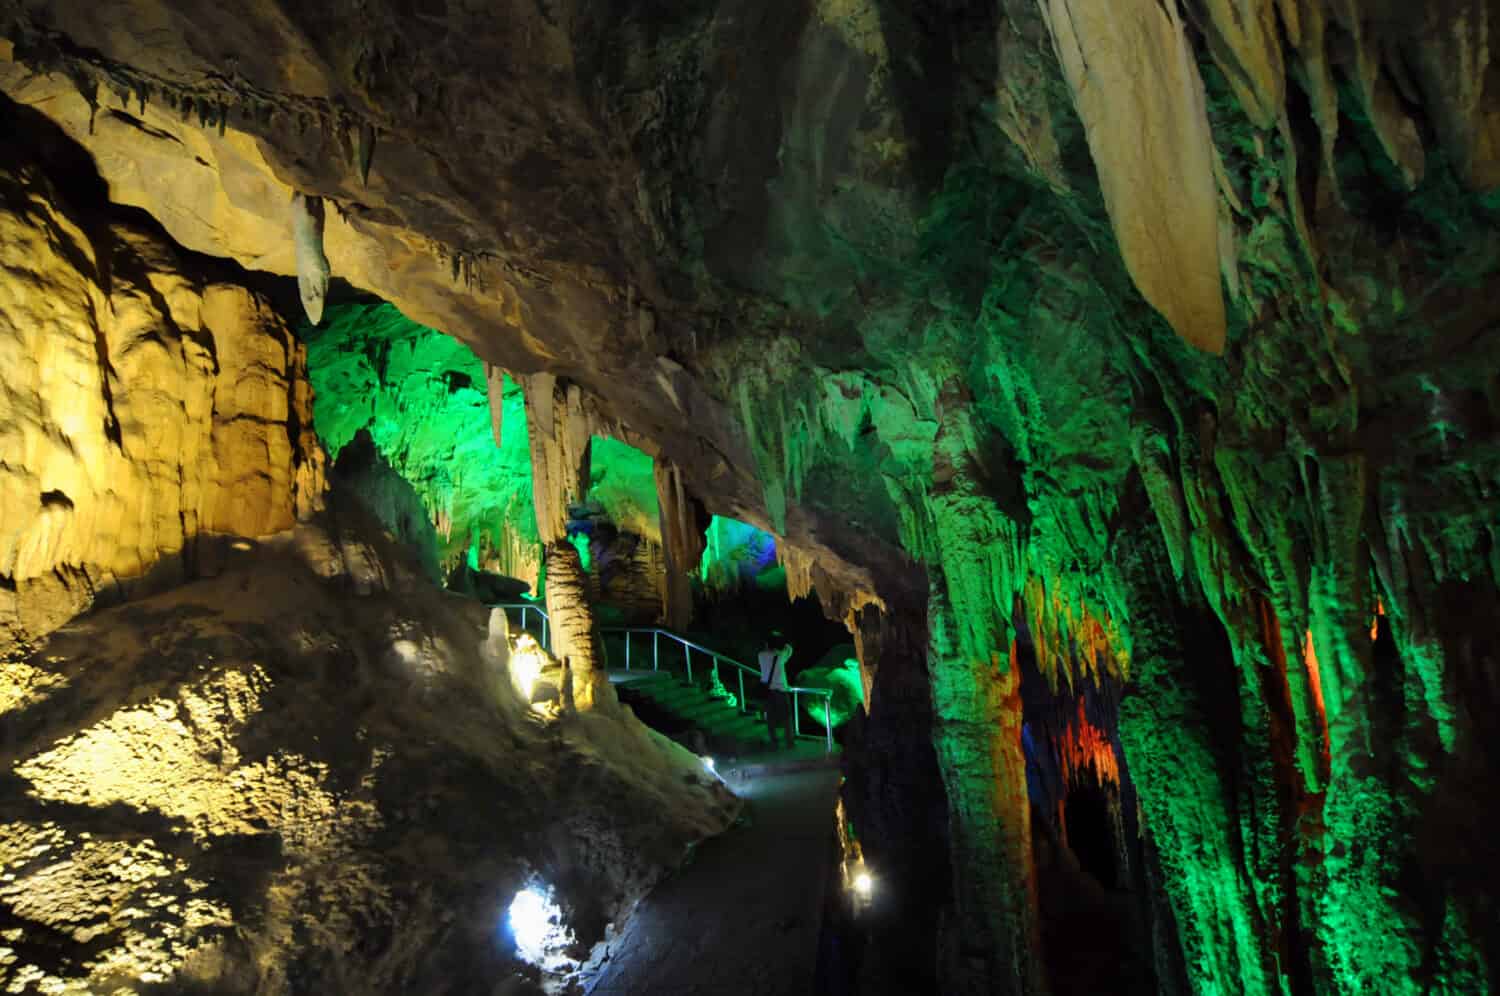 La grotta di Furong di Wulong nel Parco geologico nazionale del Carso, Chongqing della Cina, è una delle più grandi grotte calcaree del mondo, con molte stalagmiti e stalattiti colorate